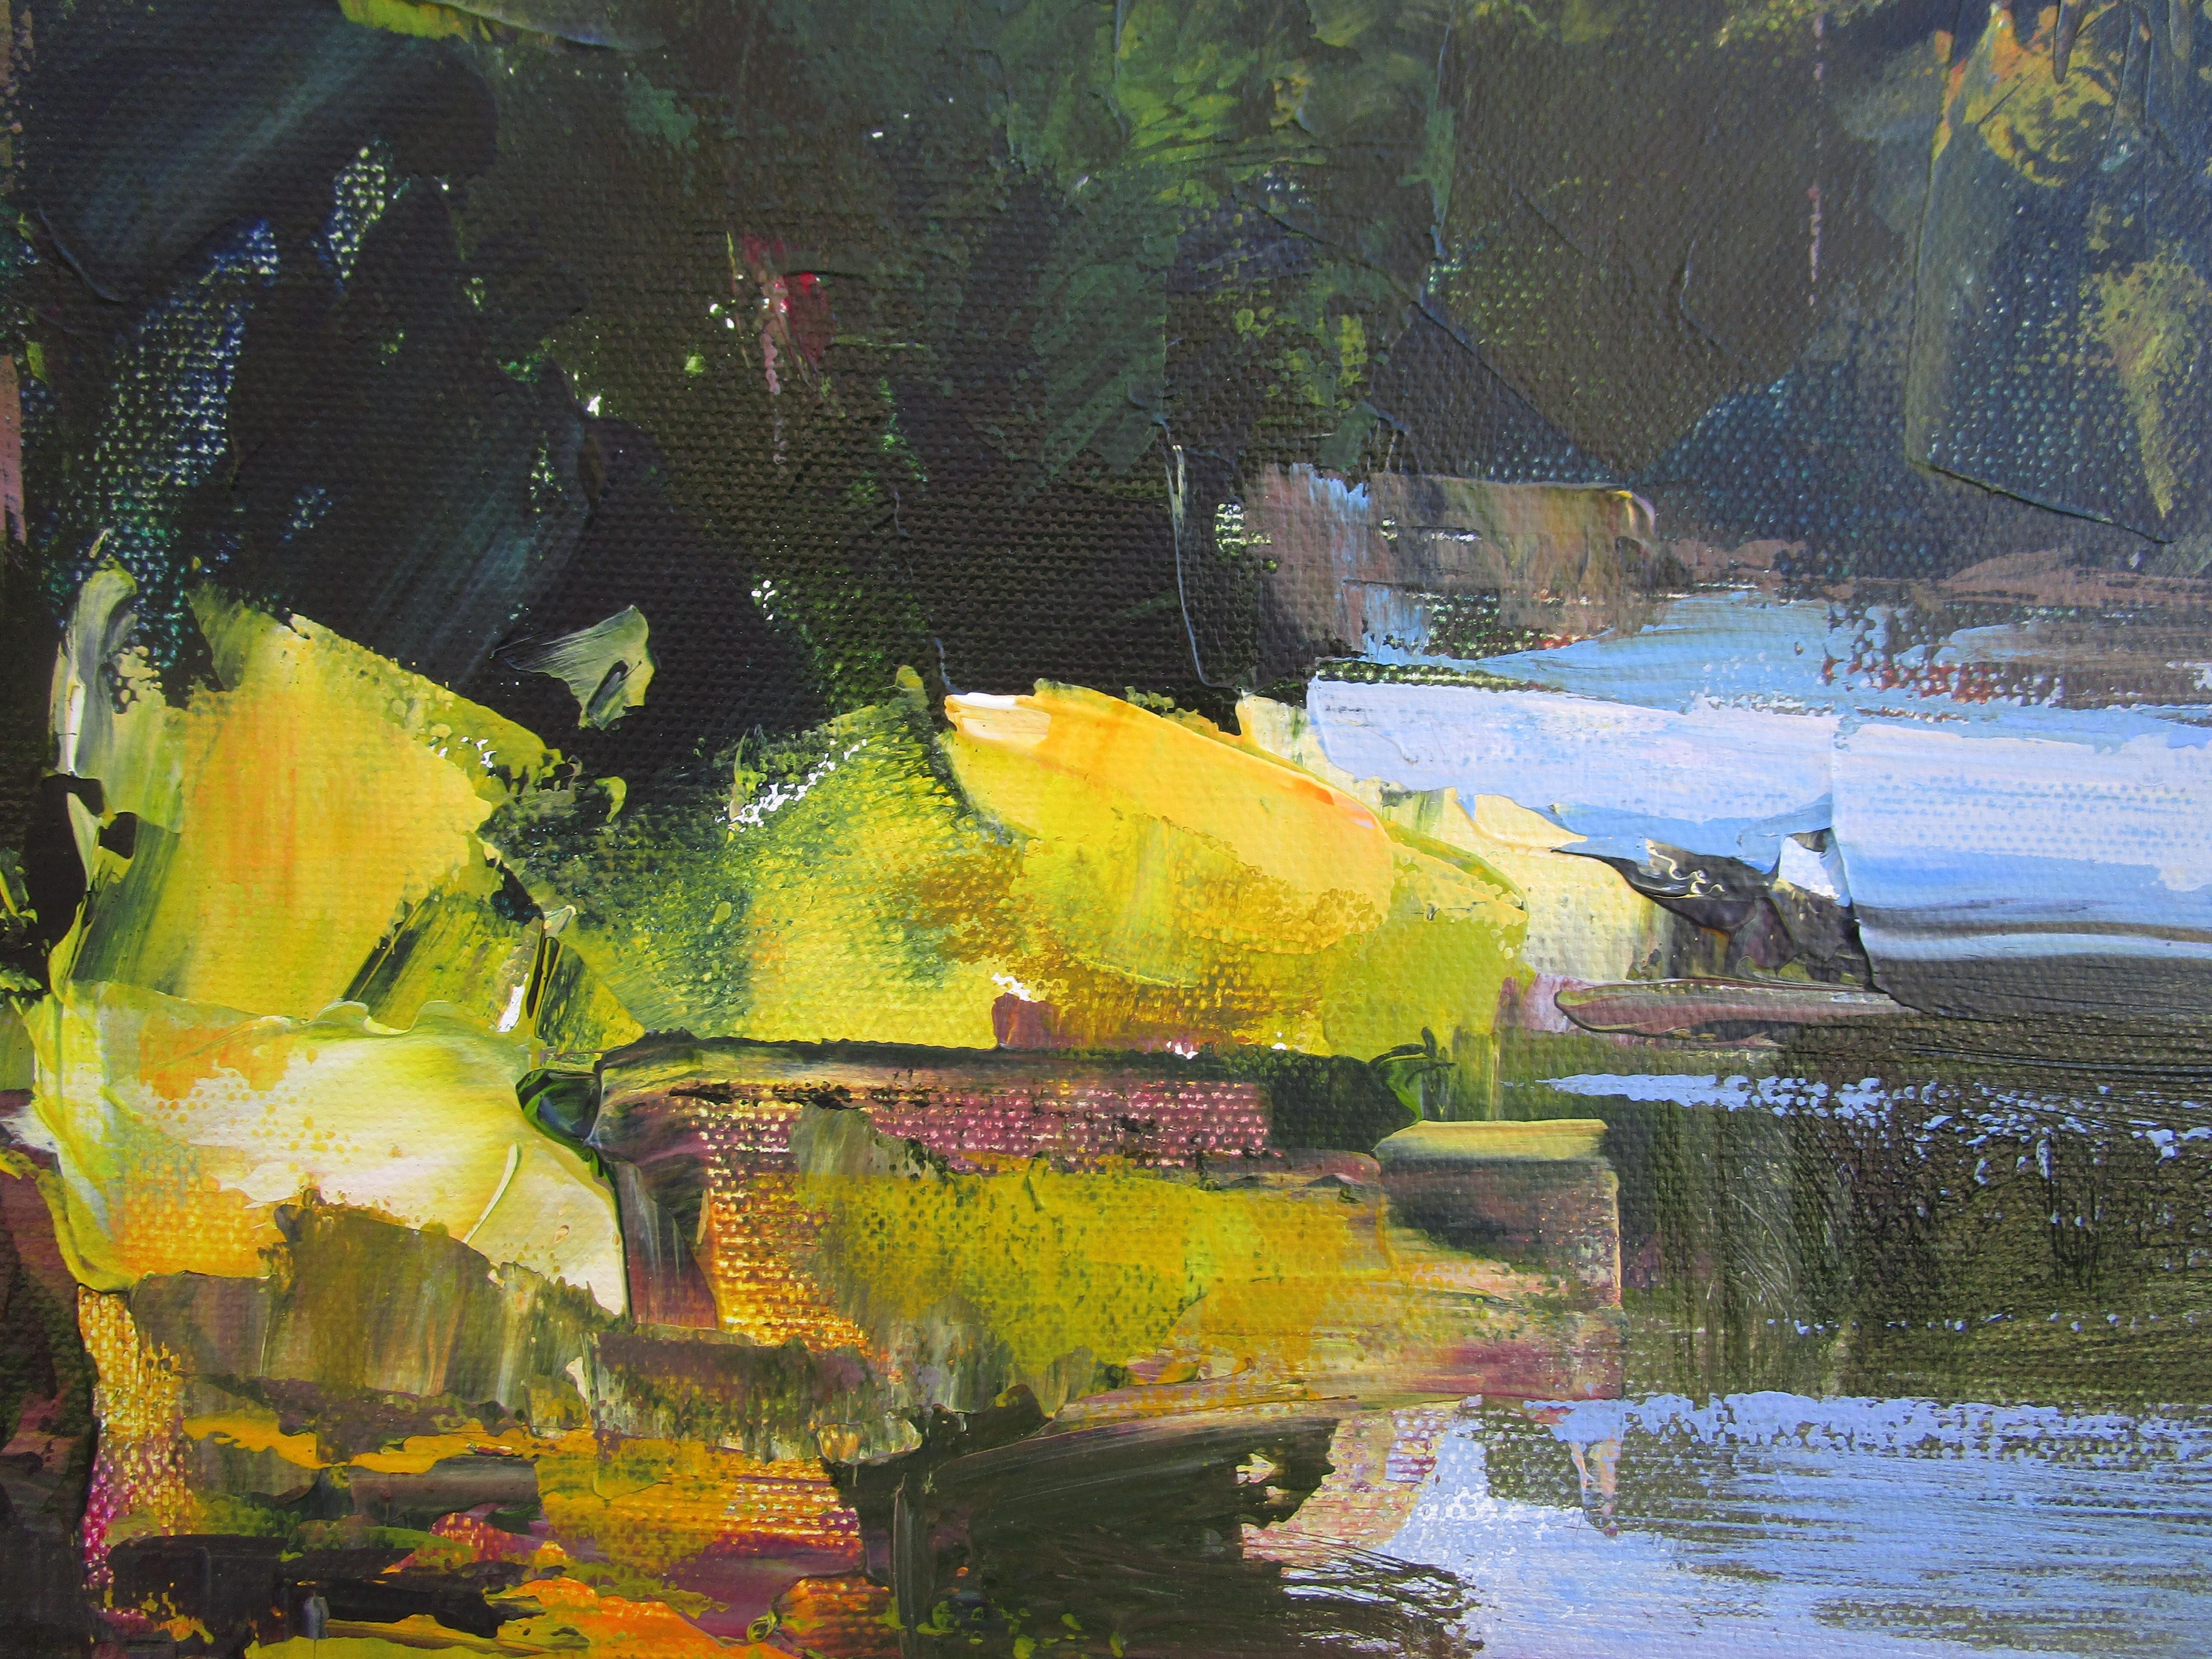 <p>Kommentare der Künstlerin<br>Die Künstlerin Janet Dyer zeigt eine impressionistische Perspektive eines stillen Sees an einem ruhigen Frühlingstag. Sie malt unberührte Gewässer, in denen sich die lebendigen Bäume in komplementären Gelb- und